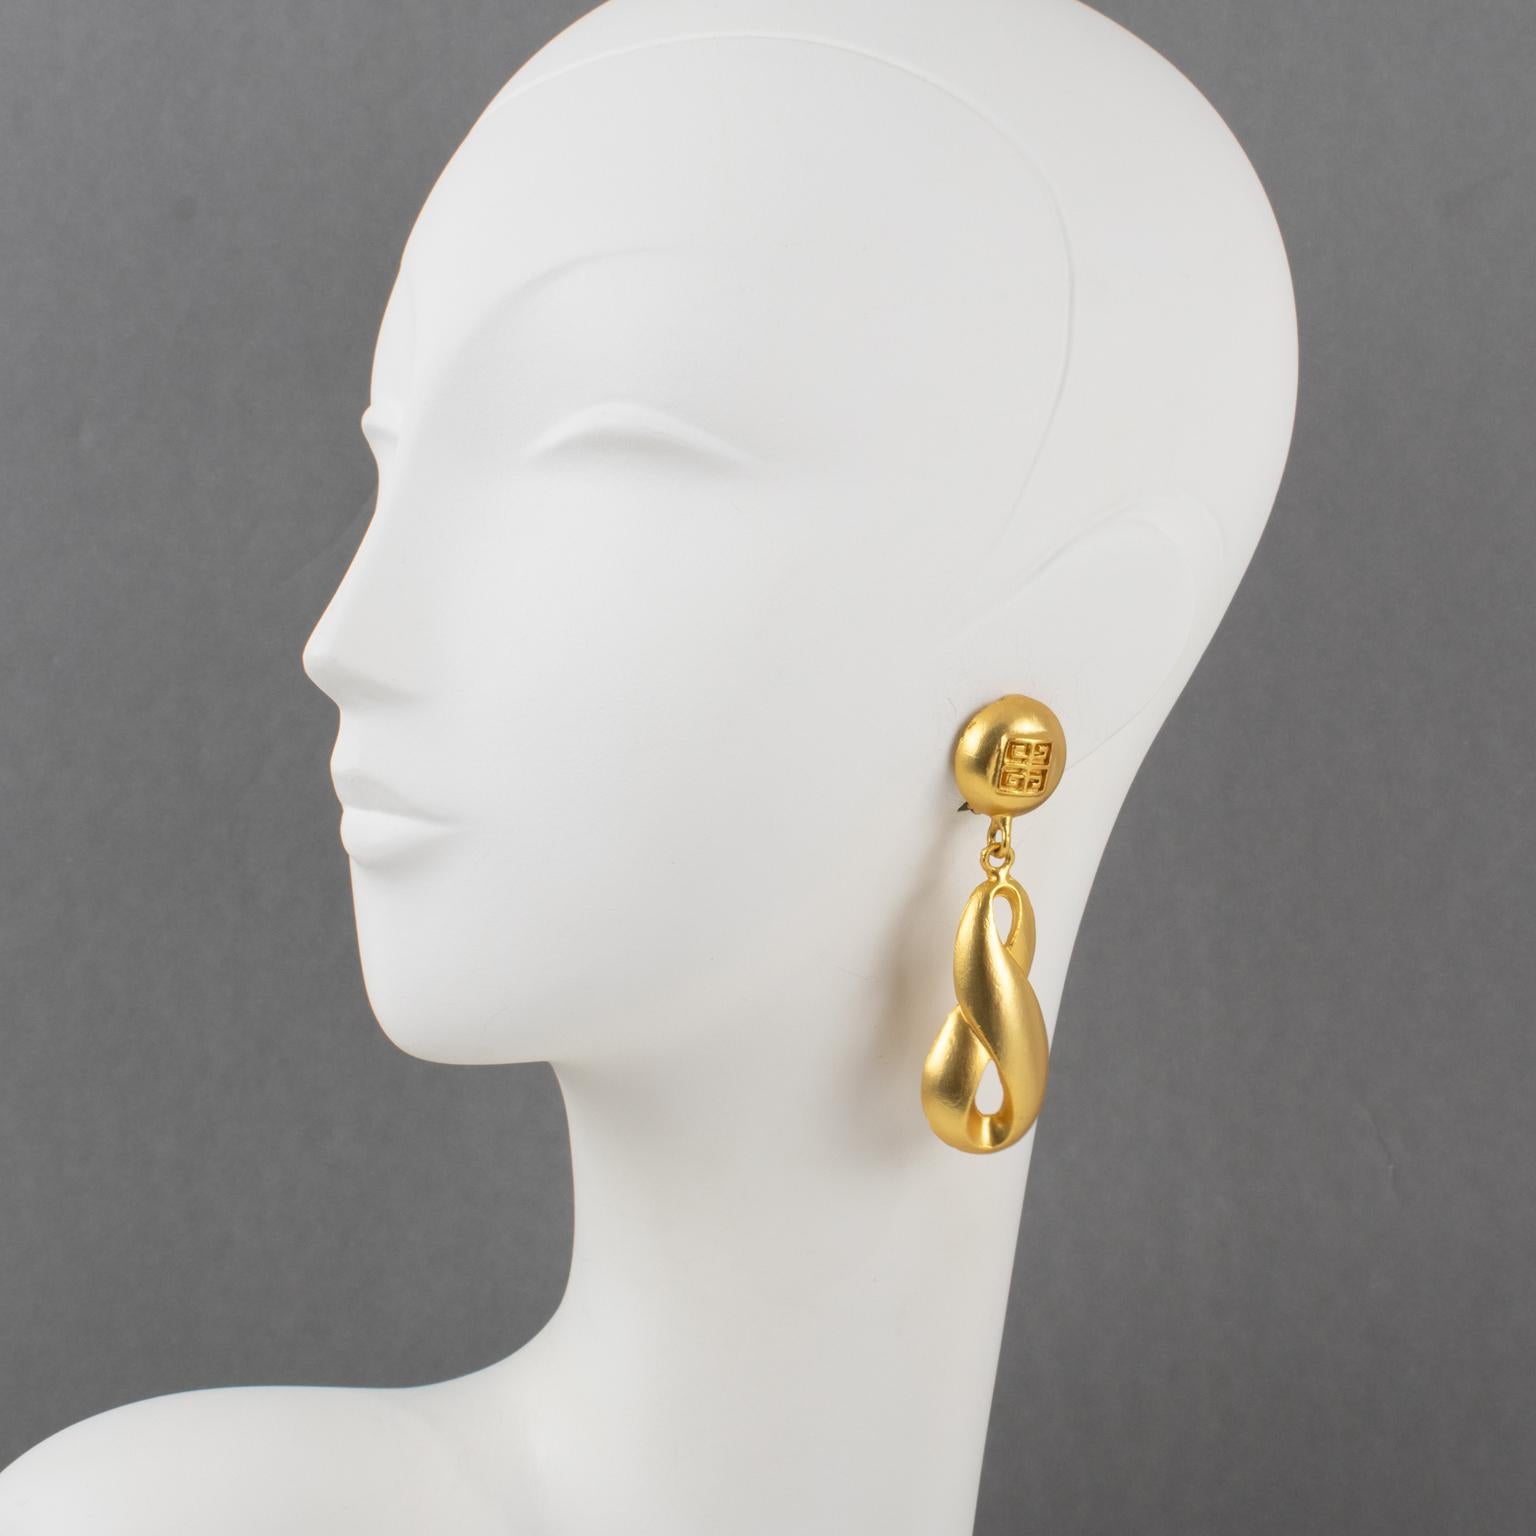 Ces boucles d'oreilles à clip Givenchy, très tendance et élégantes, présentent une longue forme pendante dimensionnelle en métal doré à la texture satinée. Elles sont signées sur le devant du logo emblématique de Givenchy.
Dimensions : 0,94 in de